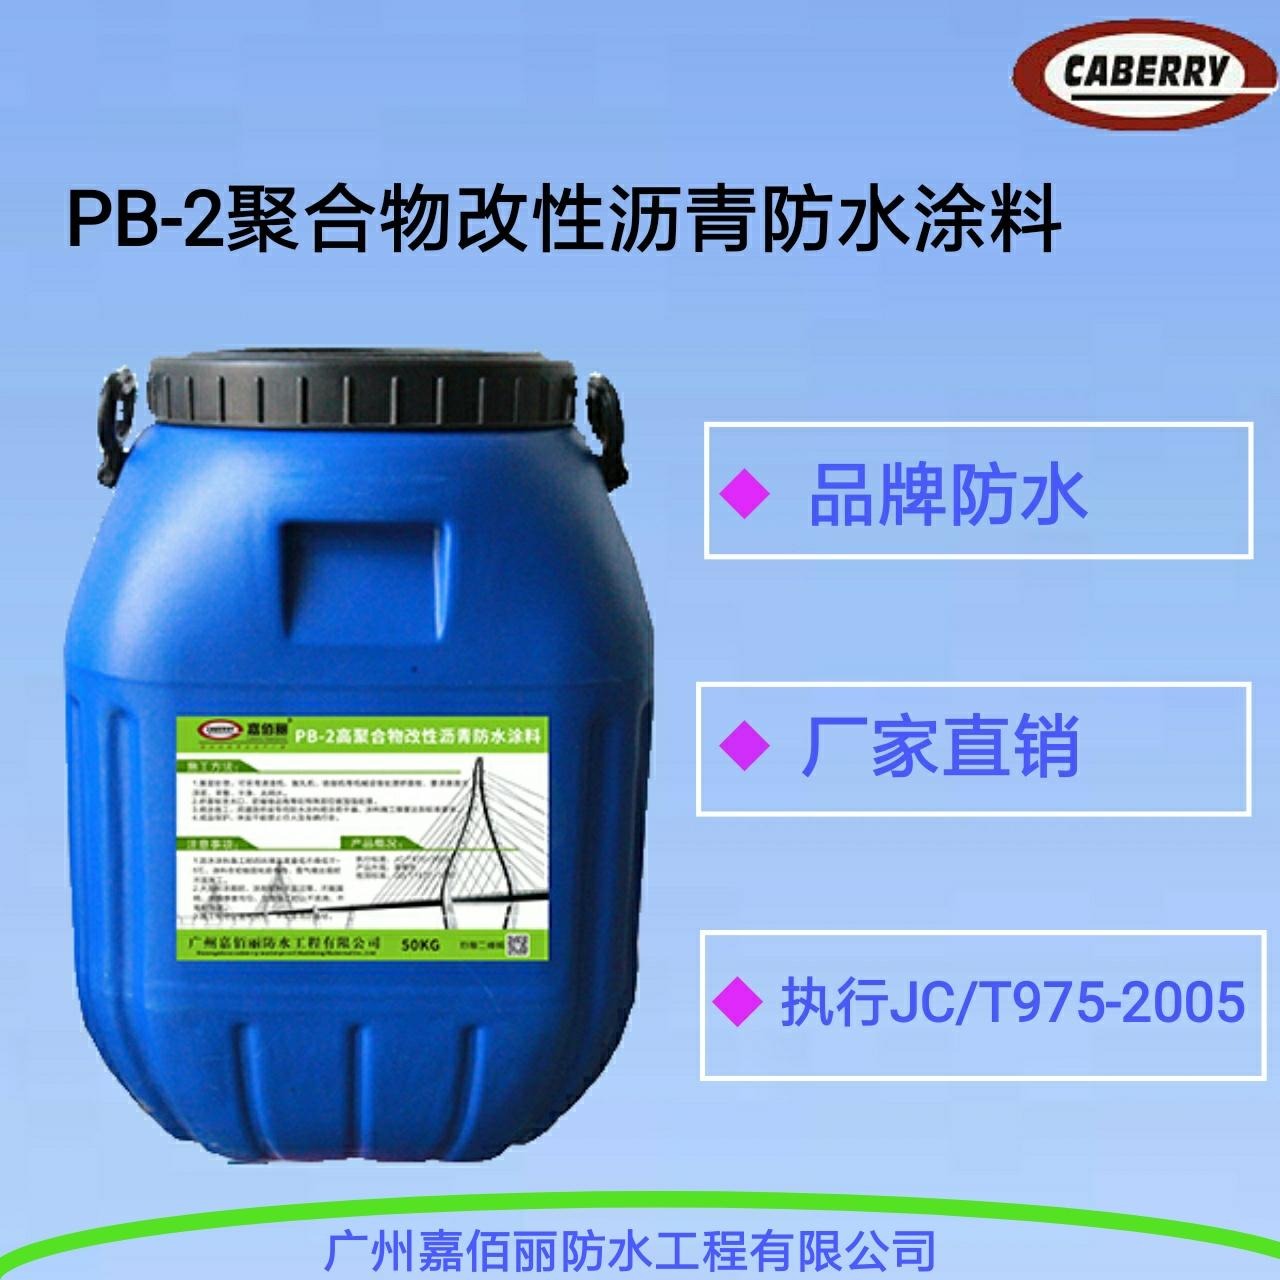 PB-2聚合物改性沥青防水涂料  防水专注道桥工程